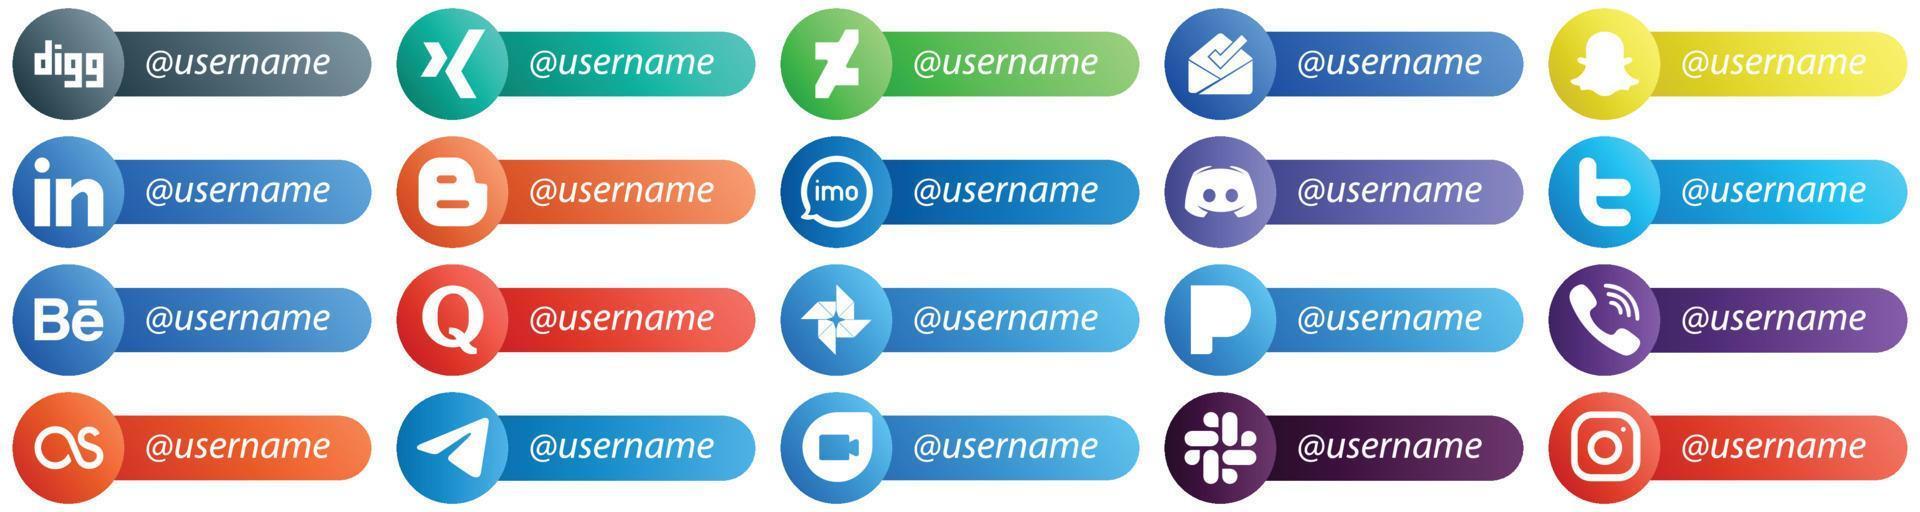 estilo de cartão siga-me ícones para os principais pacotes de 20 mídias sociais, como o twitter. texto. ícones de blog e mensagem. limpo e minimalista vetor